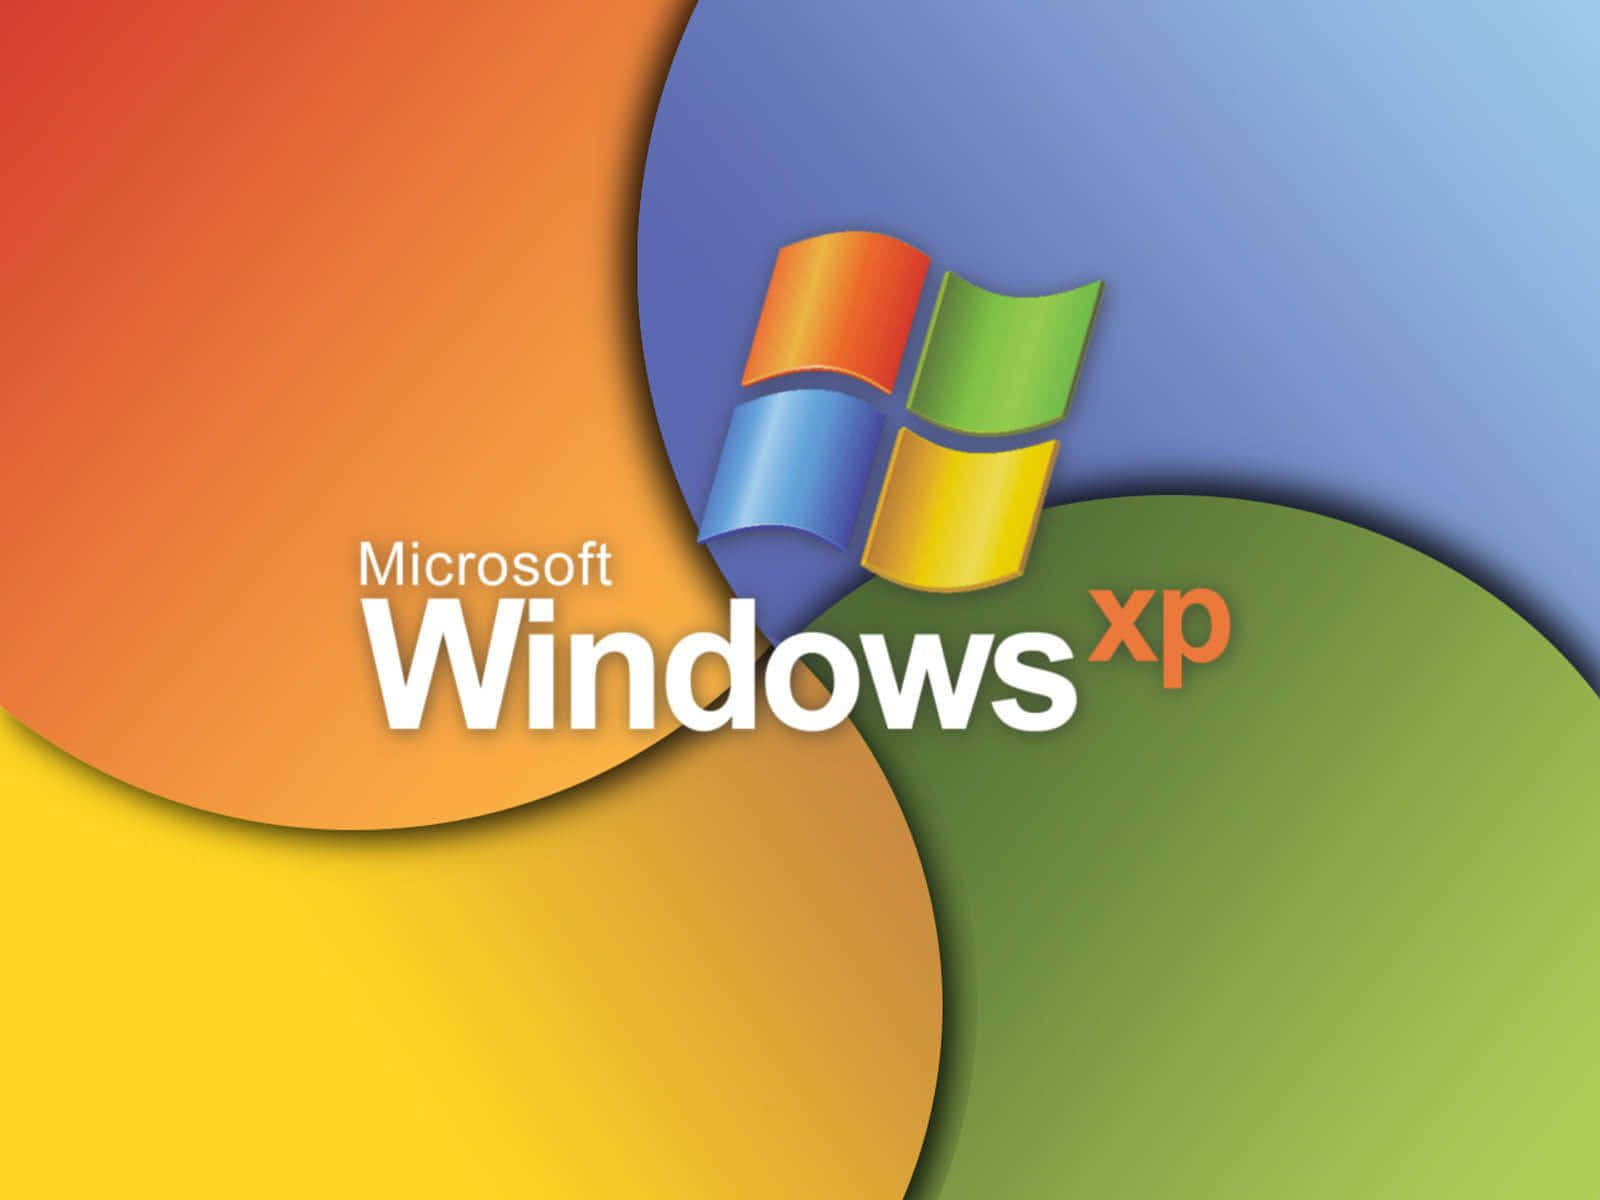 Bleibensie Mit Ihrer Welt Verbunden, Indem Sie Windows Xp Verwenden.